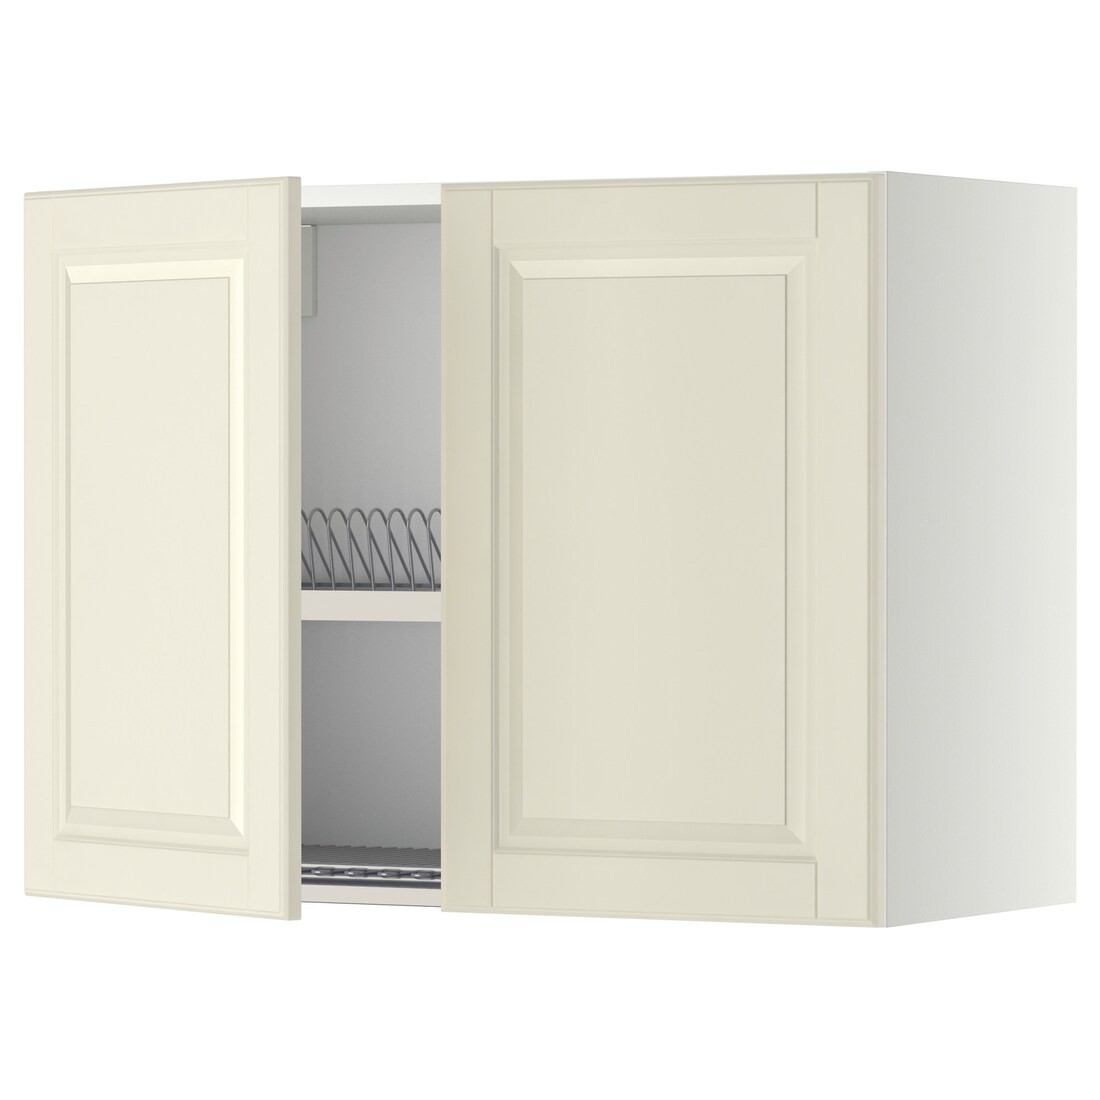 IKEA METOD МЕТОД Навесной шкаф с посудной сушилкой / 2 дверцы, белый / Bodbyn кремовый, 80x60 см 69460235 | 694.602.35